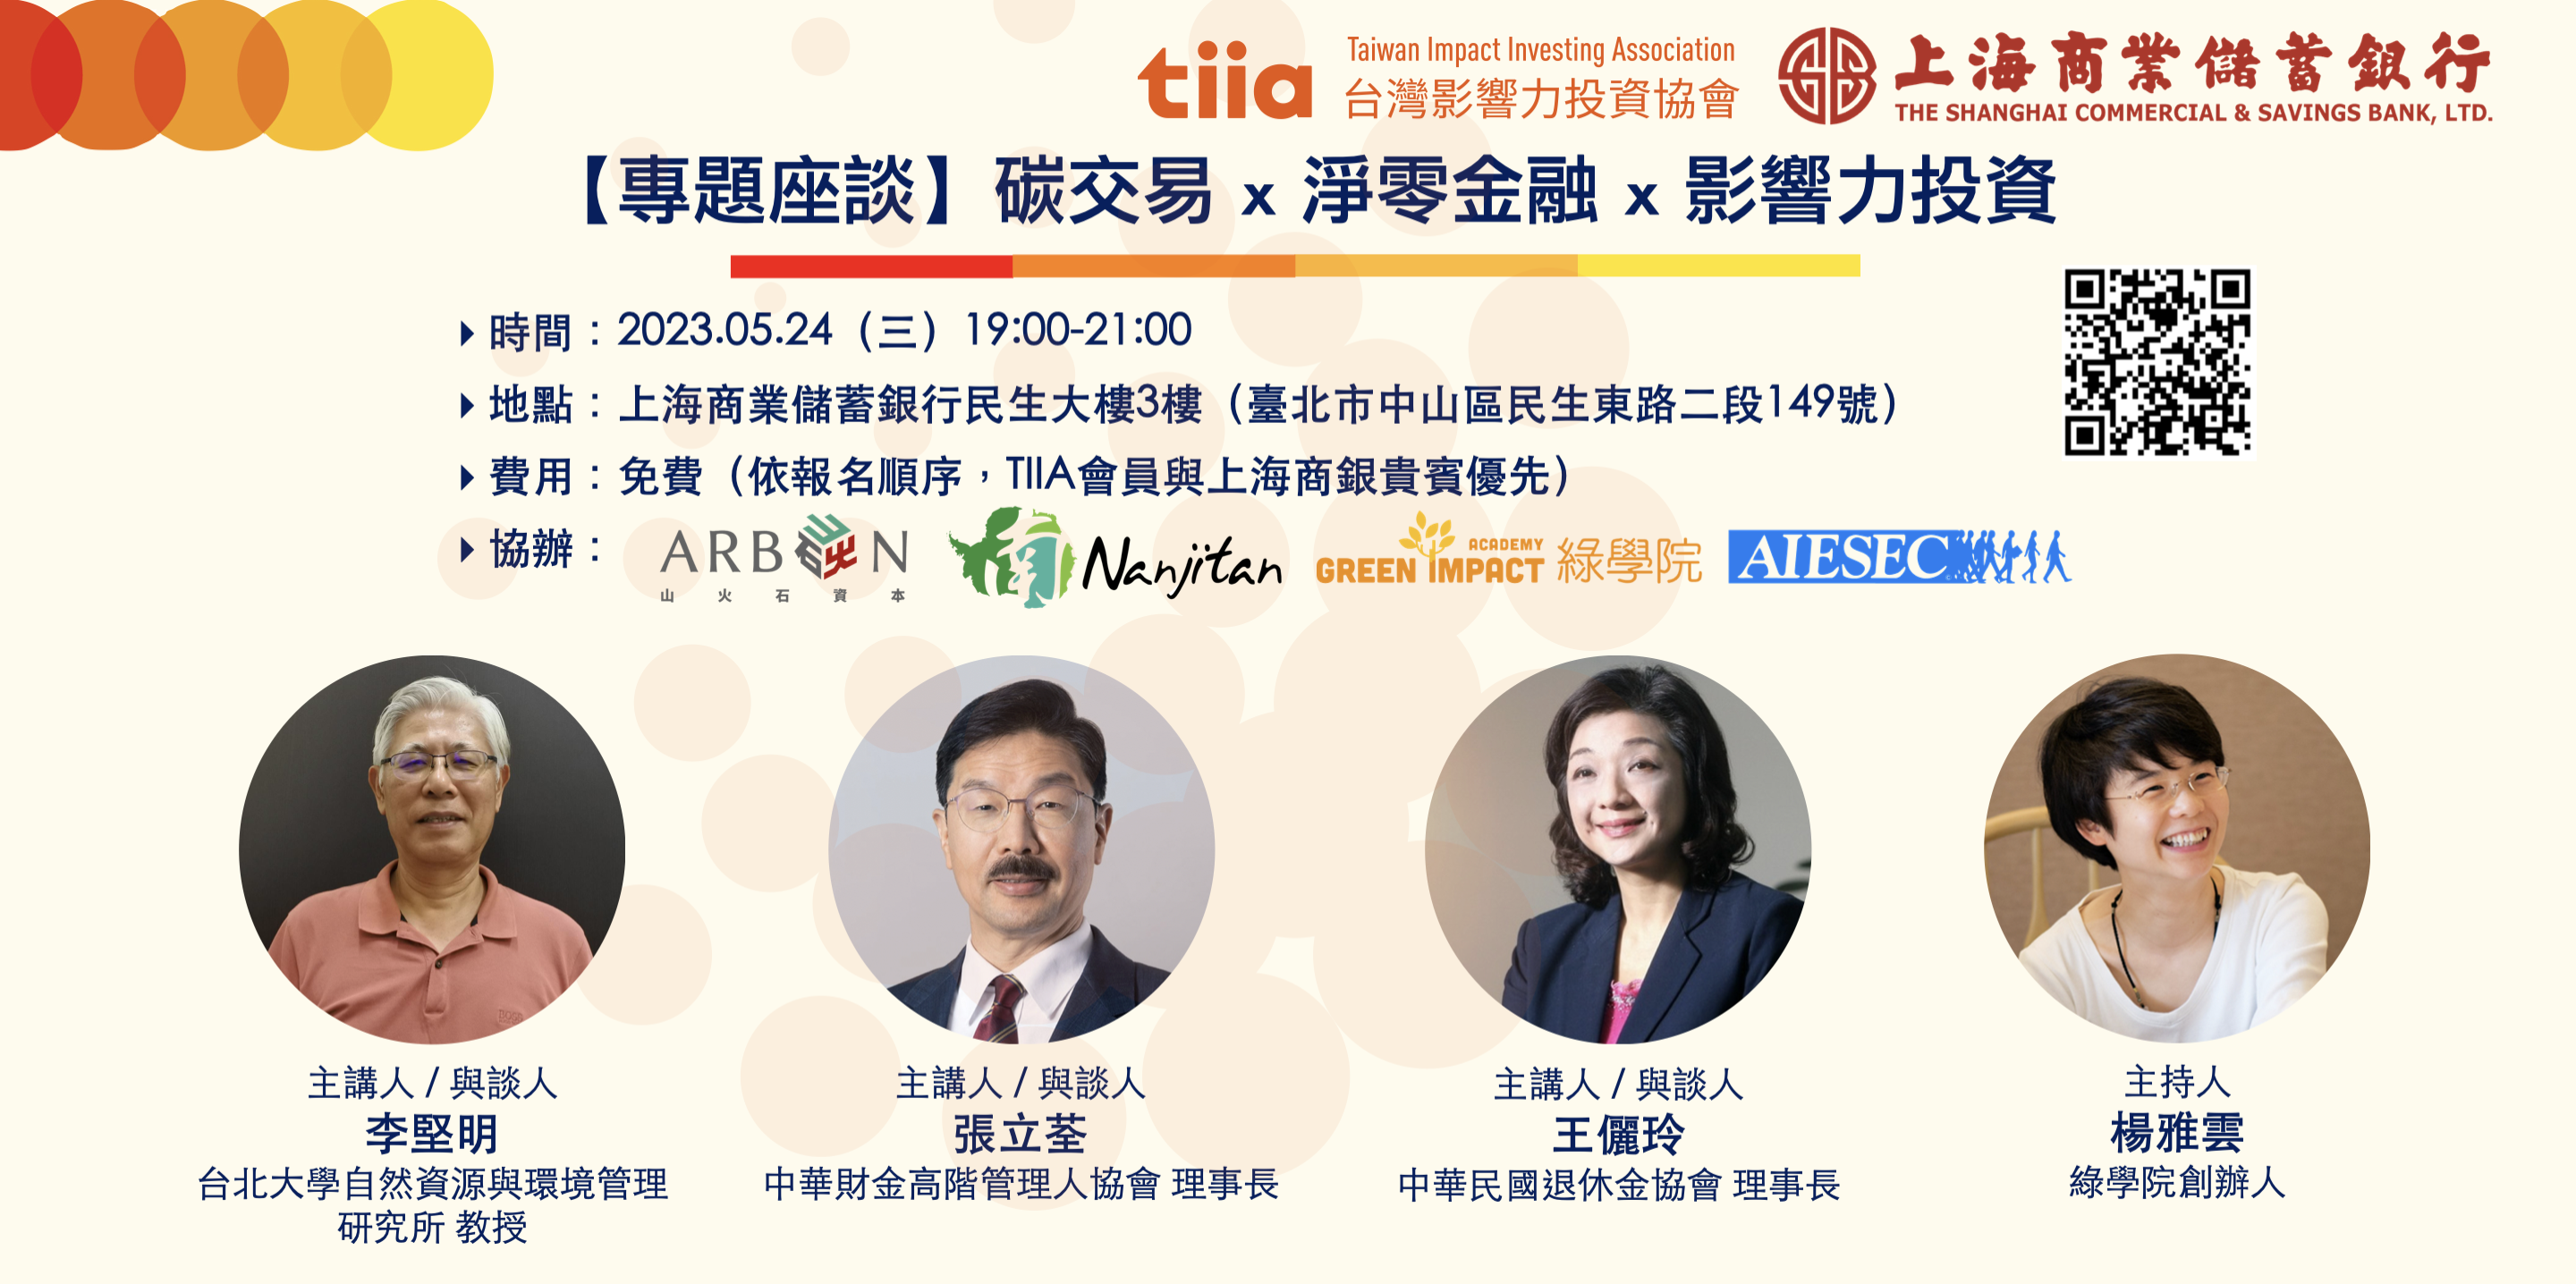 台灣影響力投資協會 x 上海商業儲蓄銀行 專題座談系列「淨零減碳 x 綠能創新 x 影響力投資」